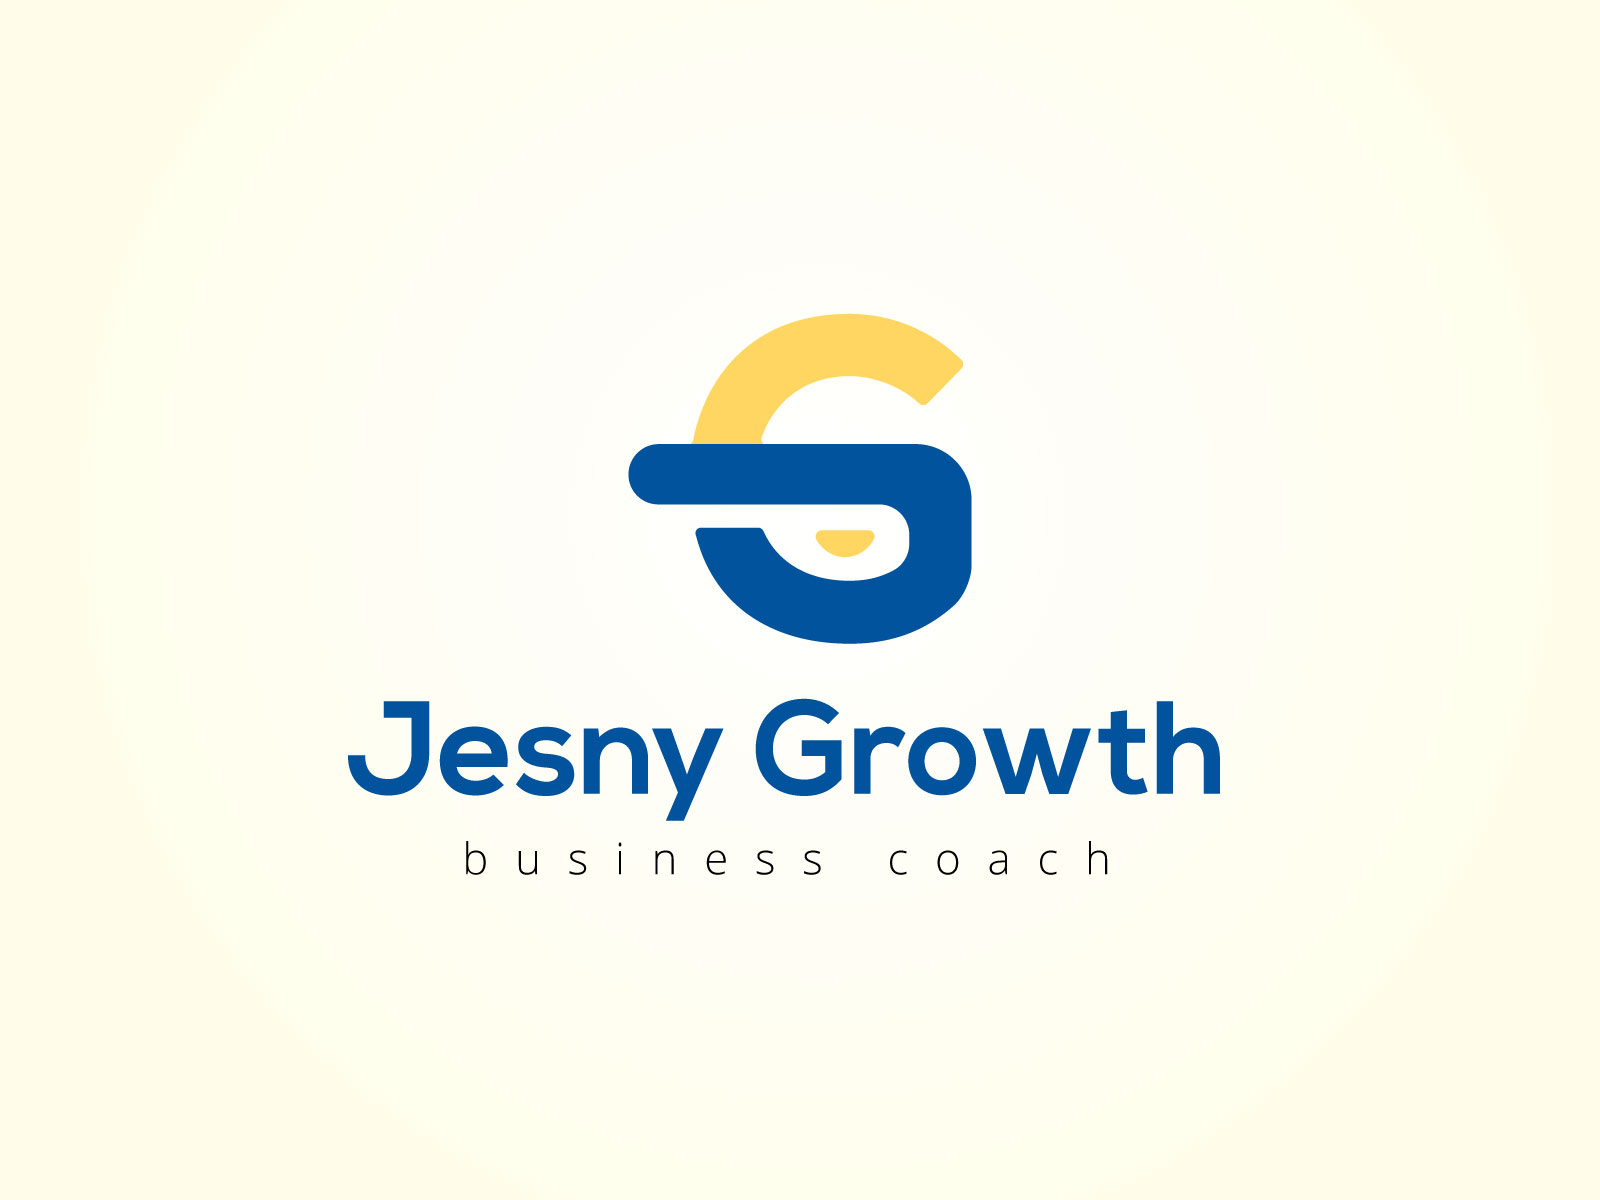 jesny growth | Business coach logo design by MD SAJIB HOSSAIN on Dribbble